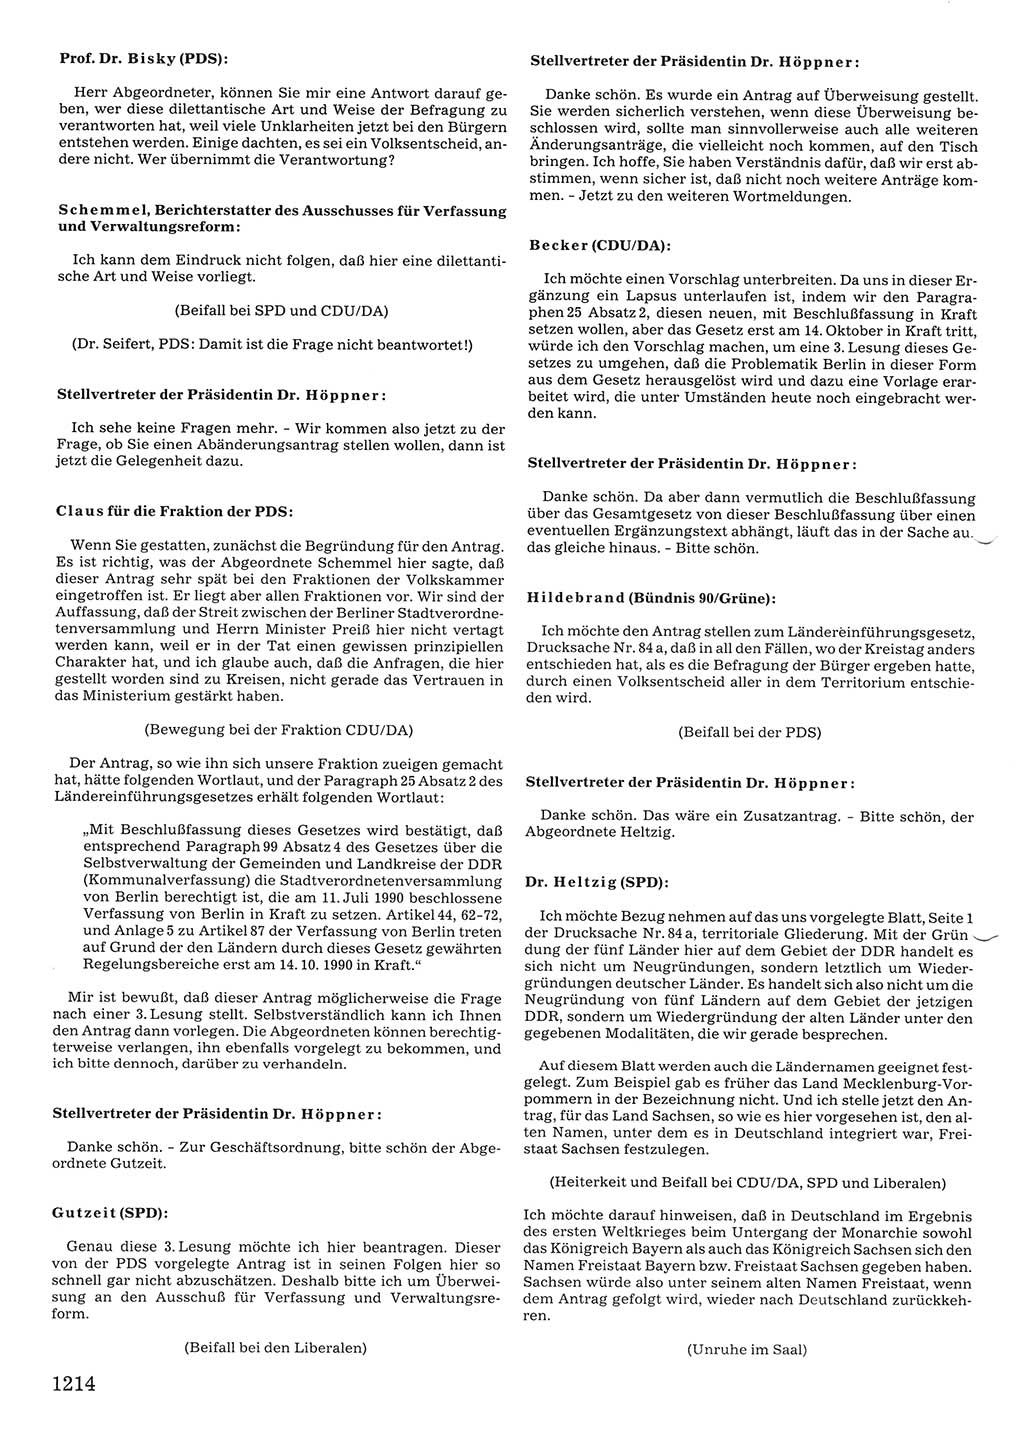 Tagungen der Volkskammer (VK) der Deutschen Demokratischen Republik (DDR), 10. Wahlperiode 1990, Seite 1214 (VK. DDR 10. WP. 1990, Prot. Tg. 1-38, 5.4.-2.10.1990, S. 1214)